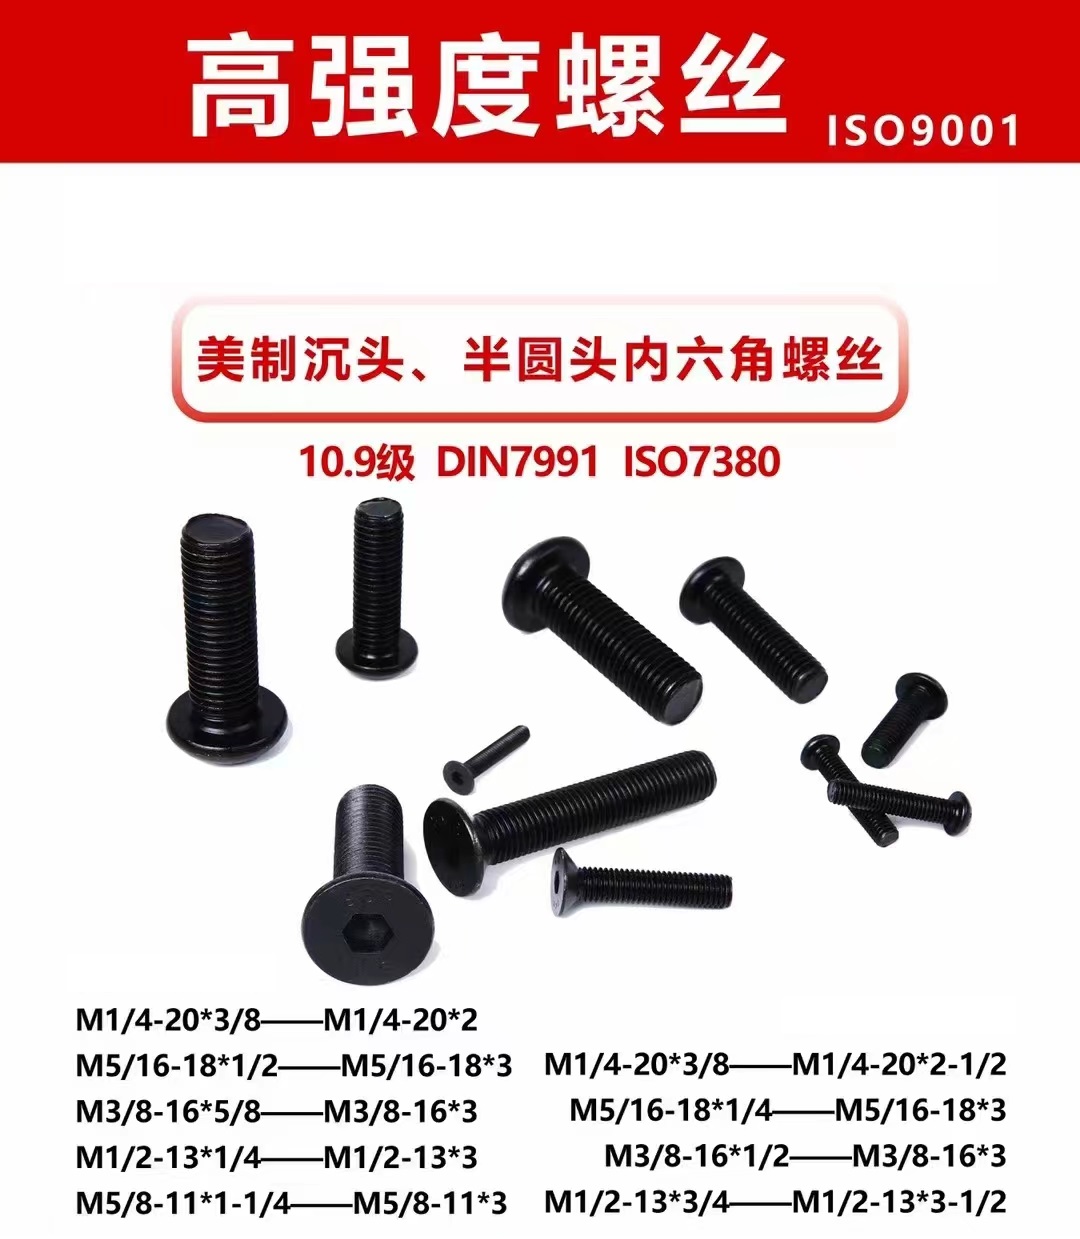 DIN7991 verzonken schroeven met binnenzeskant geproduceerd door TR Fasteners